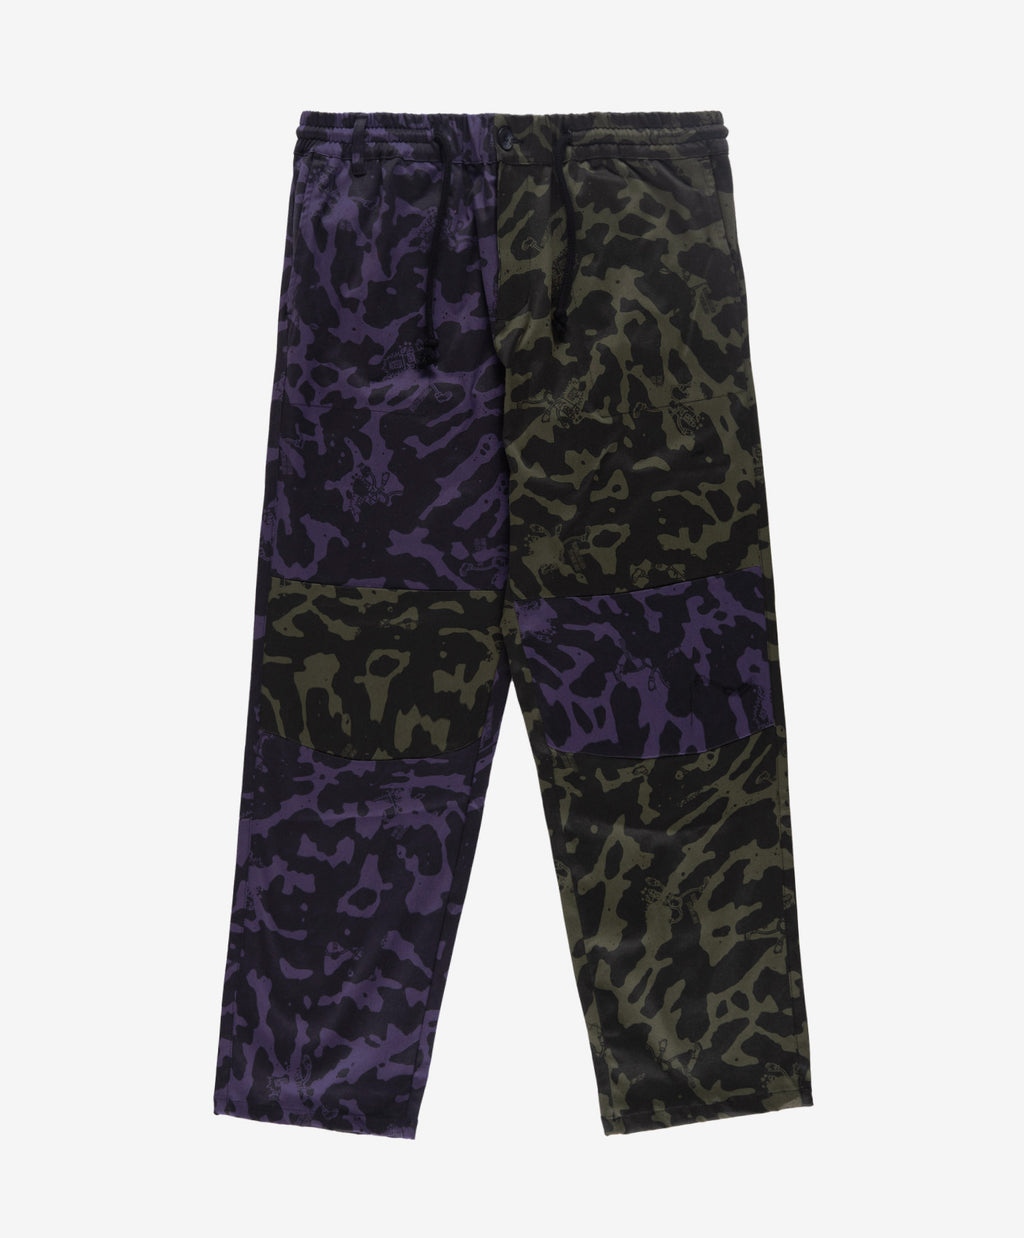 https://www.funkysnowboards.com/cdn/shop/products/funky-foam-trousers-green-purple-front_1024x.jpg?v=1675760254